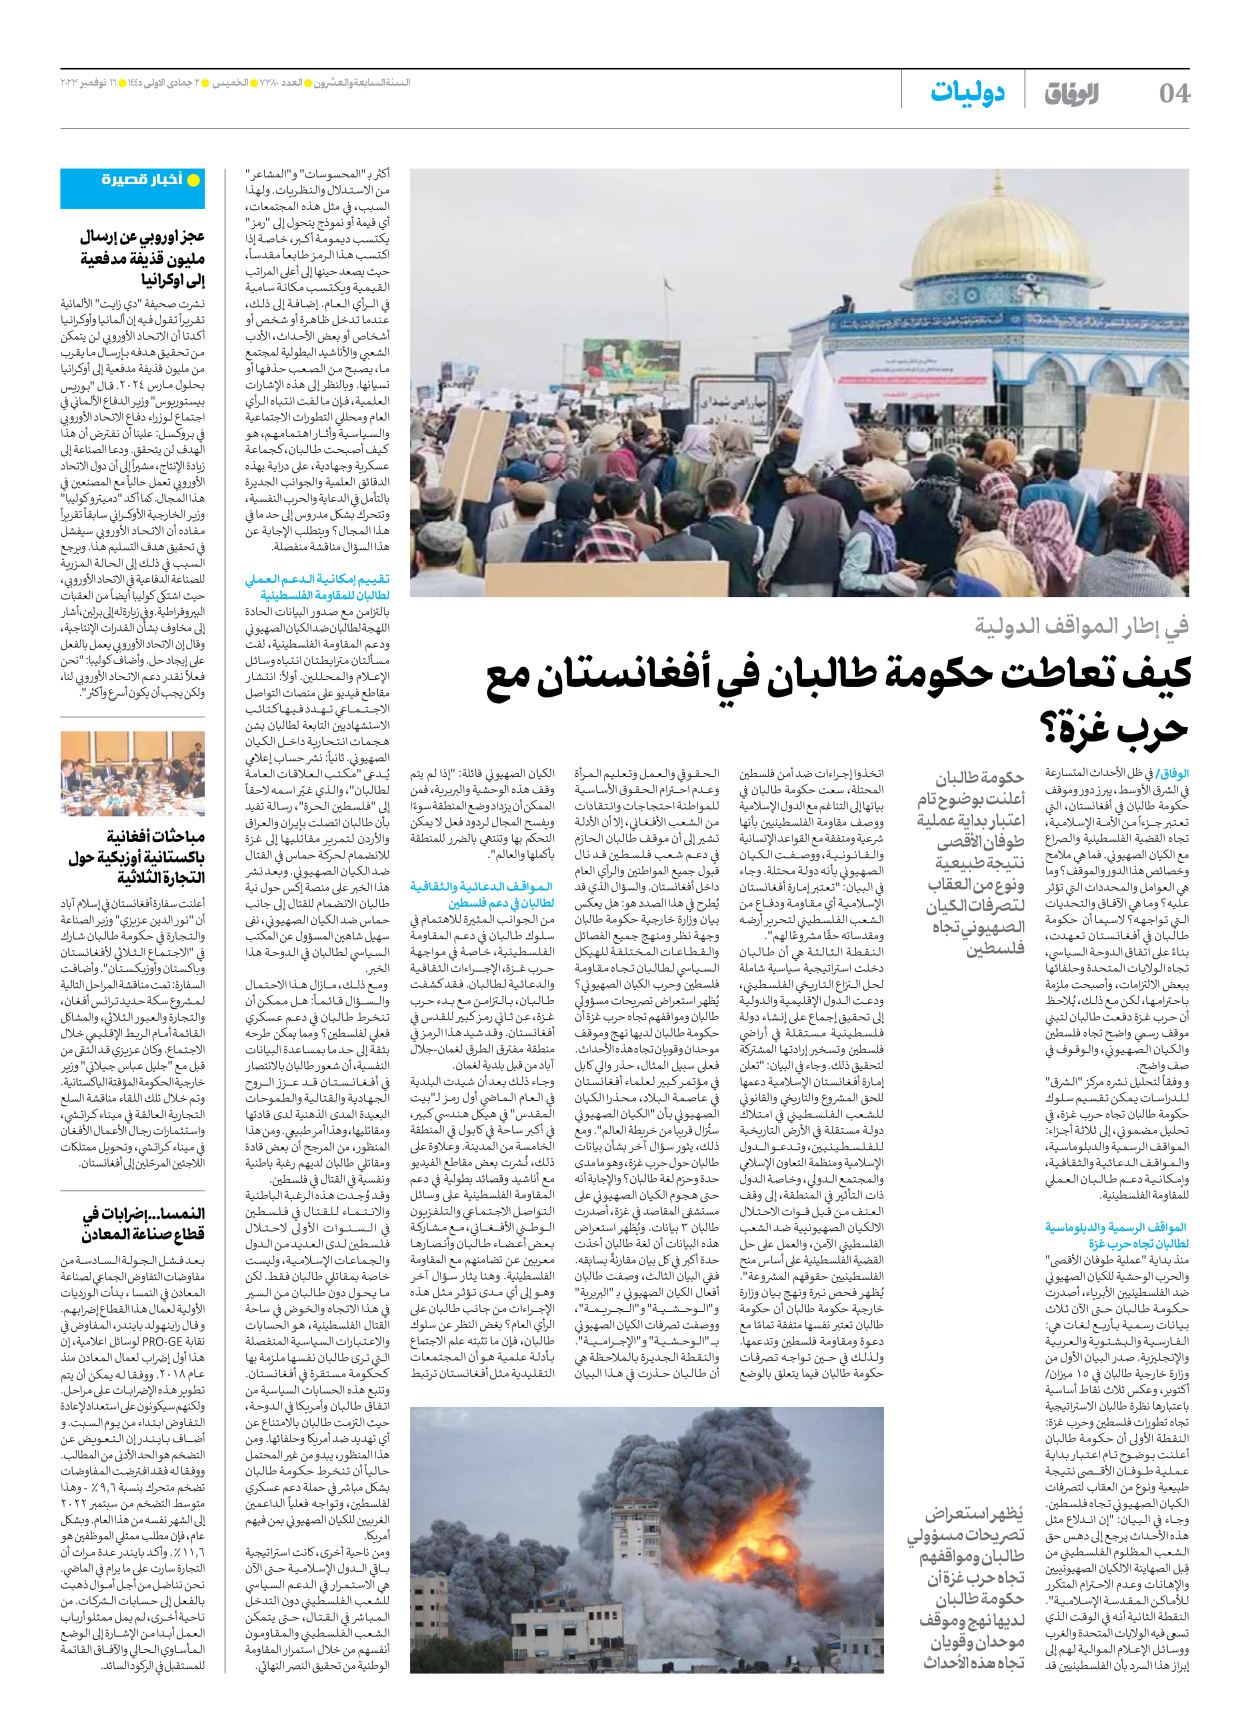 صحیفة ایران الدولیة الوفاق - العدد سبعة آلاف وثلاثمائة وثمانون - ١٦ نوفمبر ٢٠٢٣ - الصفحة ٤